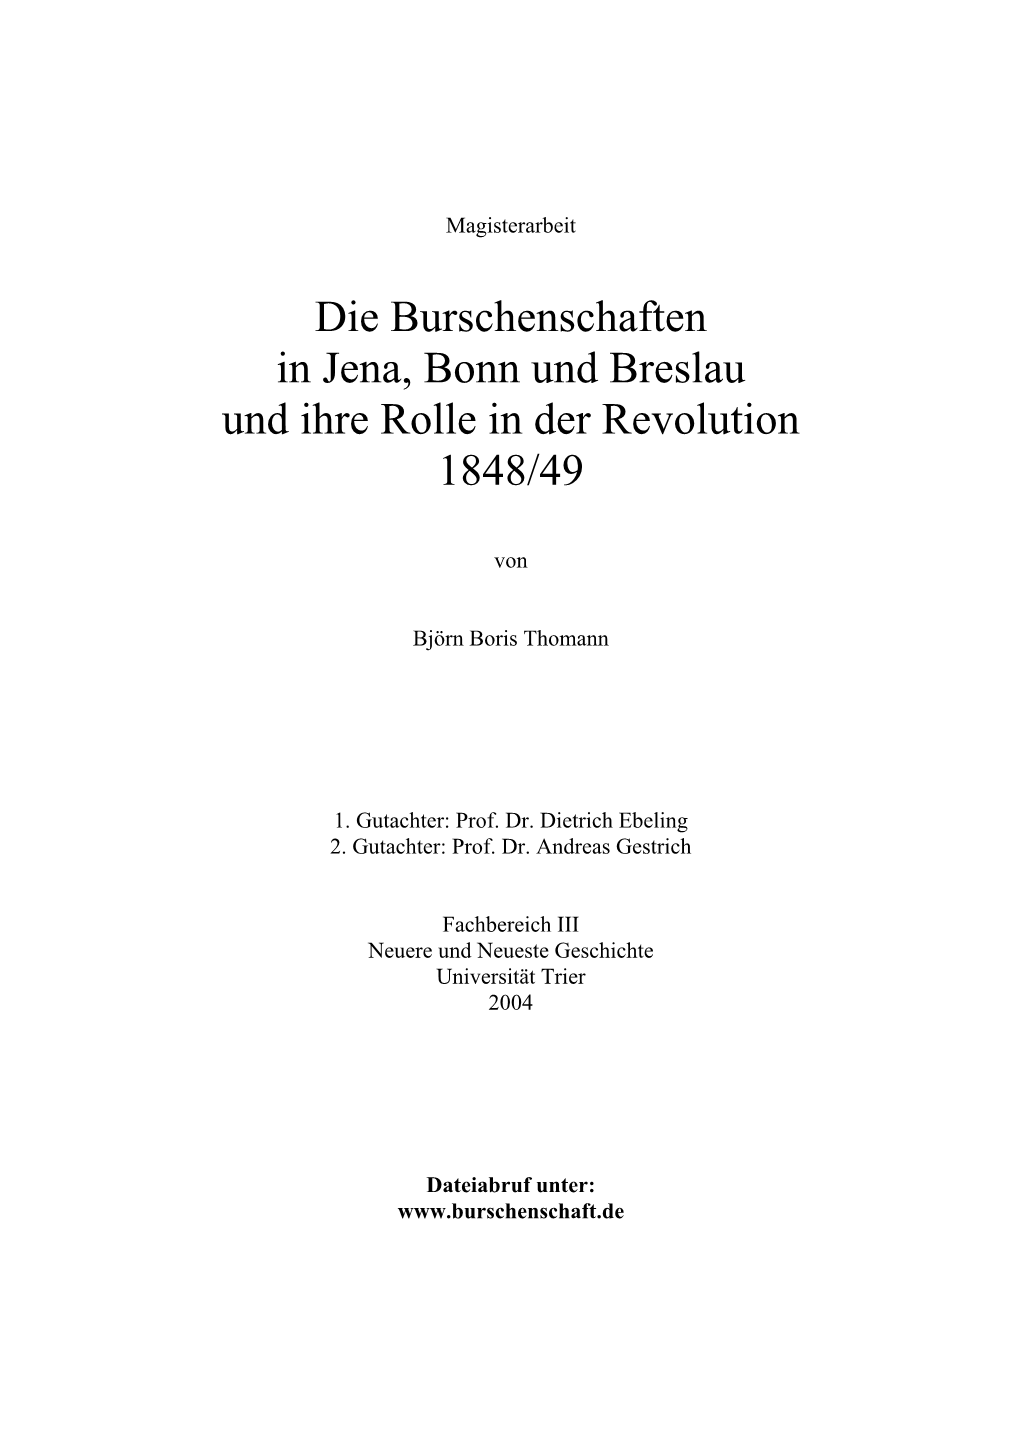 Die Burschenschaften in Jena, Bonn Und Breslau Und Ihre Rolle in Der Revolution 1848/49